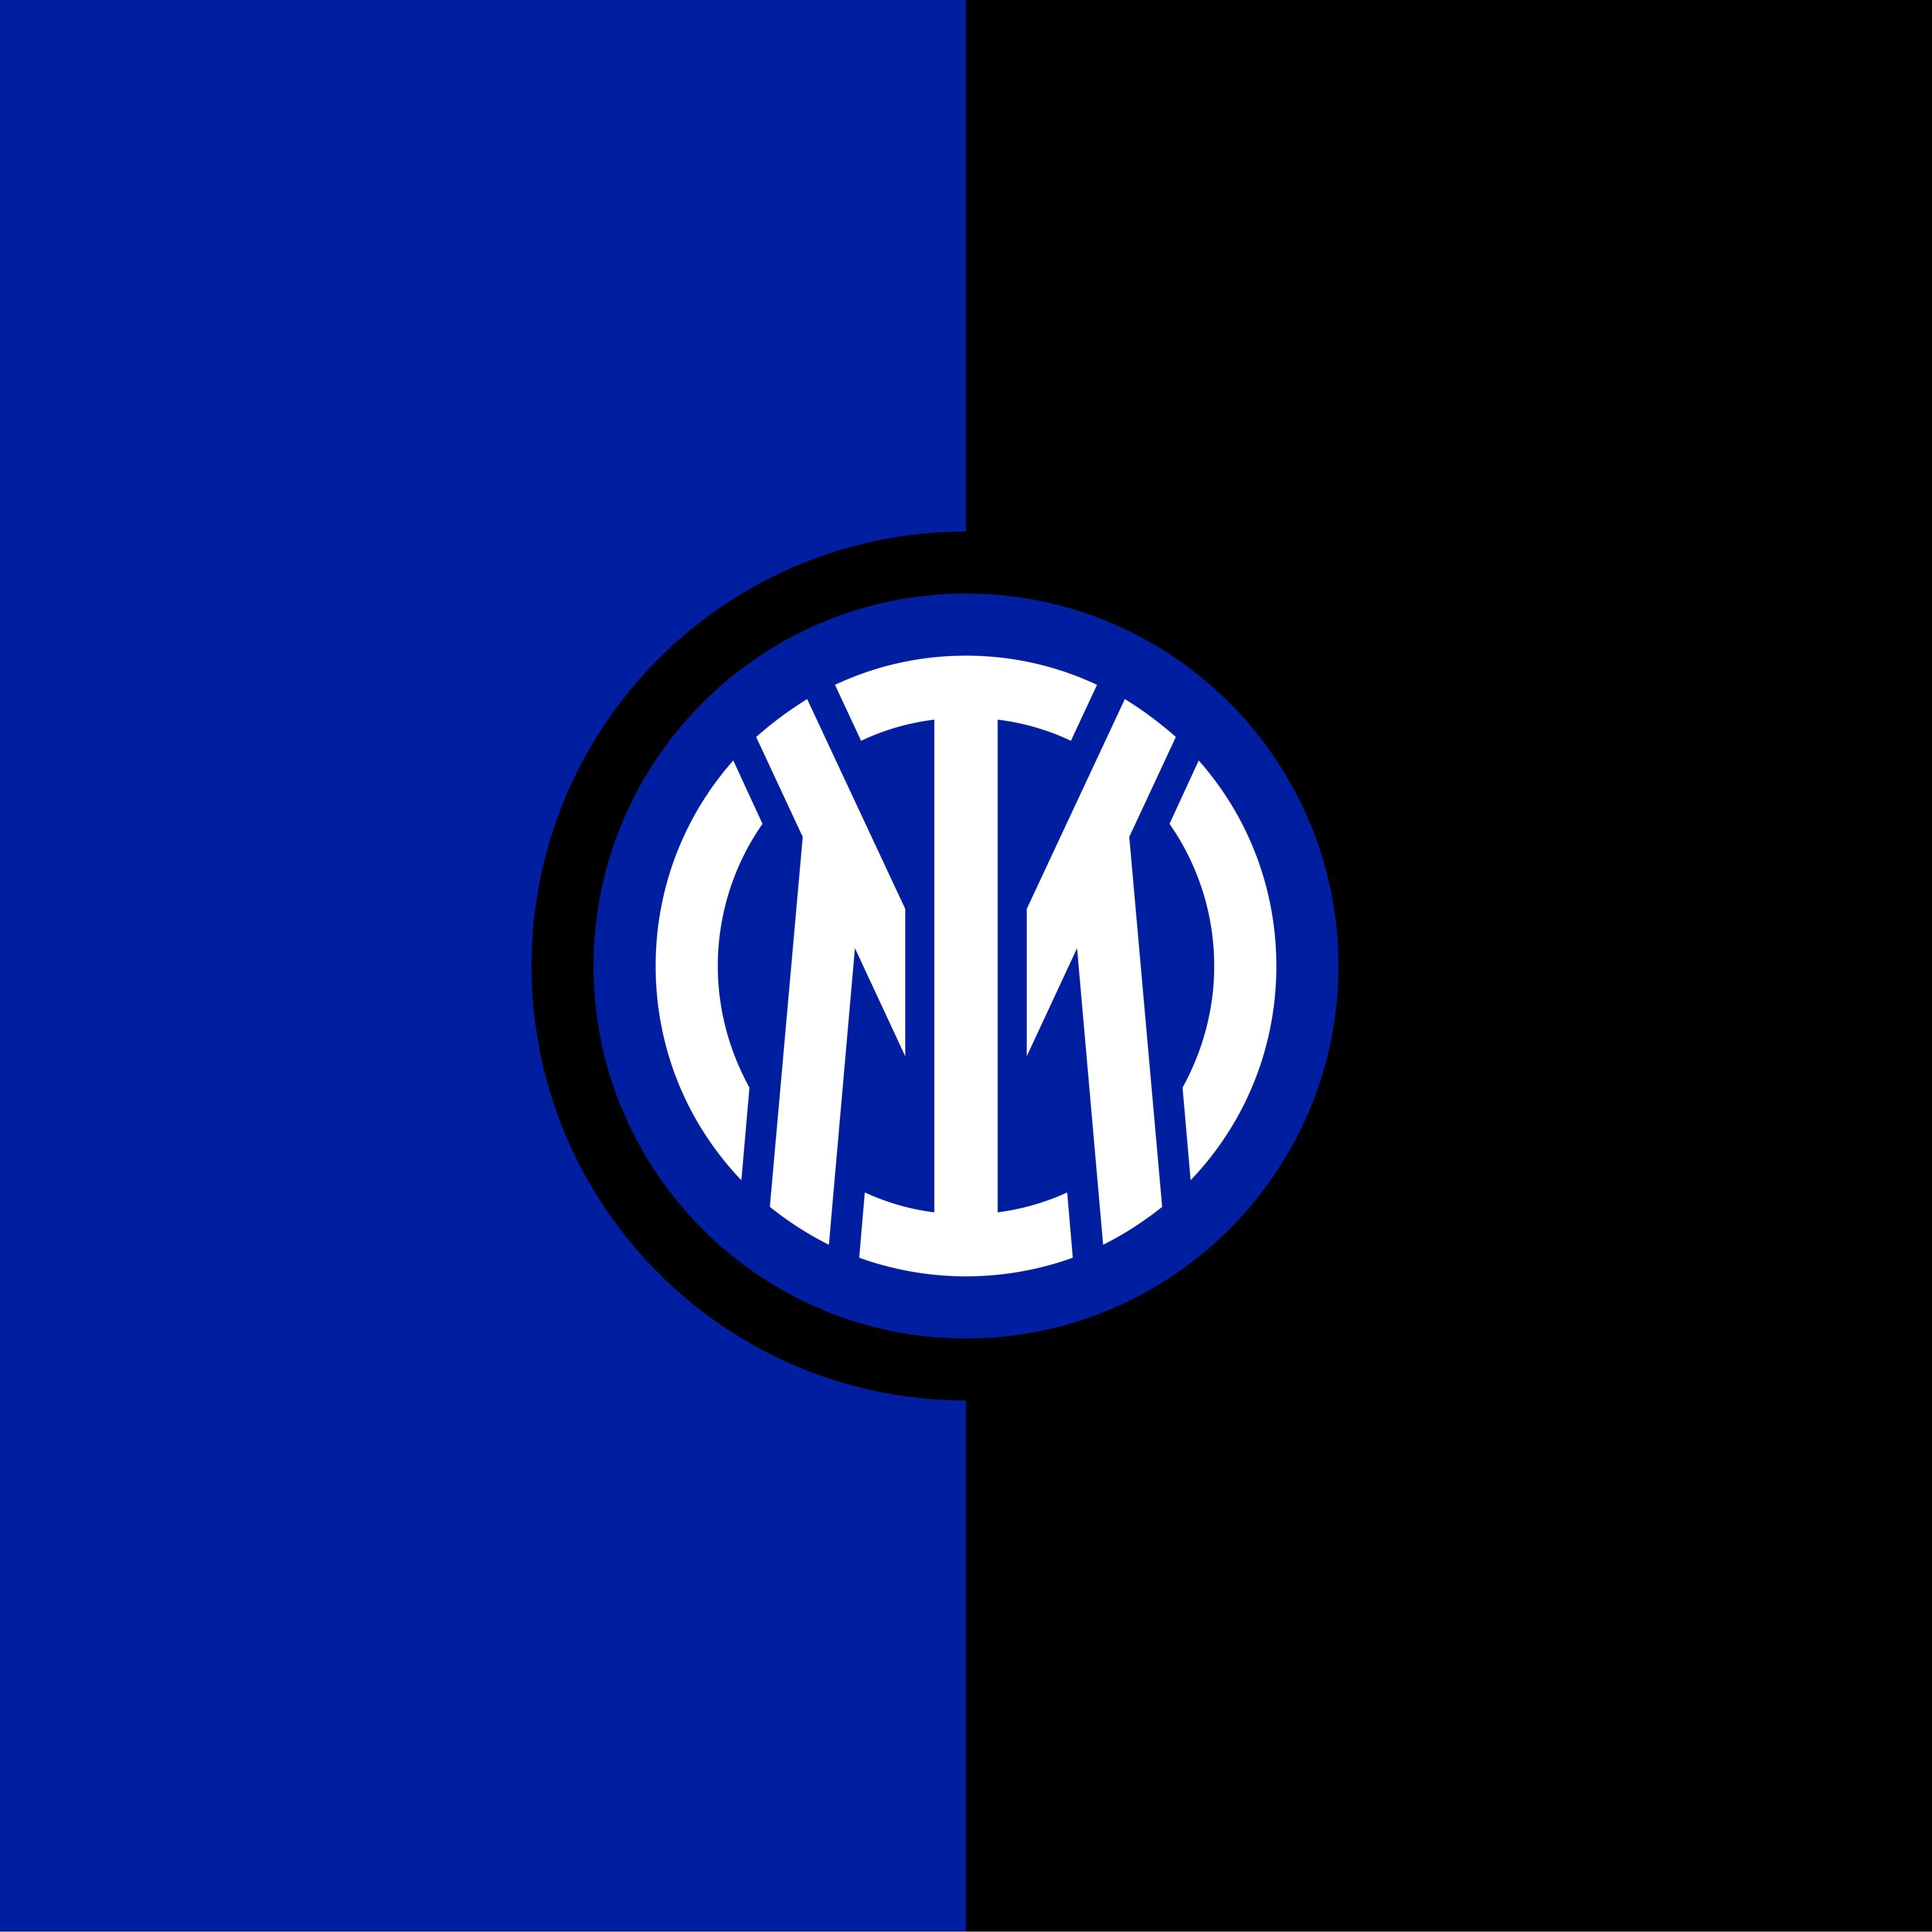 Inter me. Интер футбольный клуб эмблема. Новая эмблема Интера 2021.